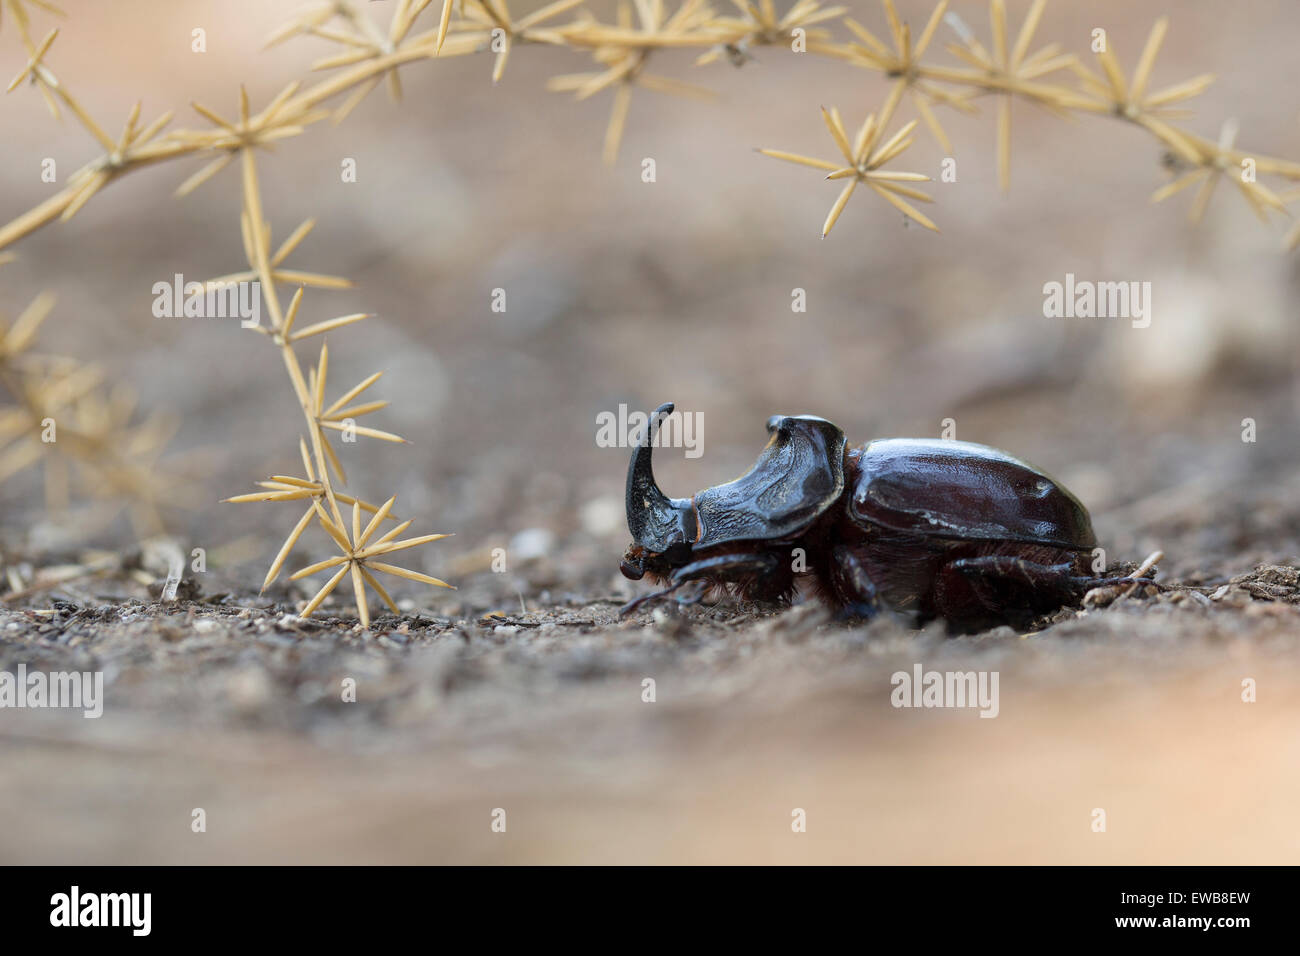 Cornuto o spagnolo Dung beetle (Copris hispanus). Fotografato in Israele nel Maggio Foto Stock